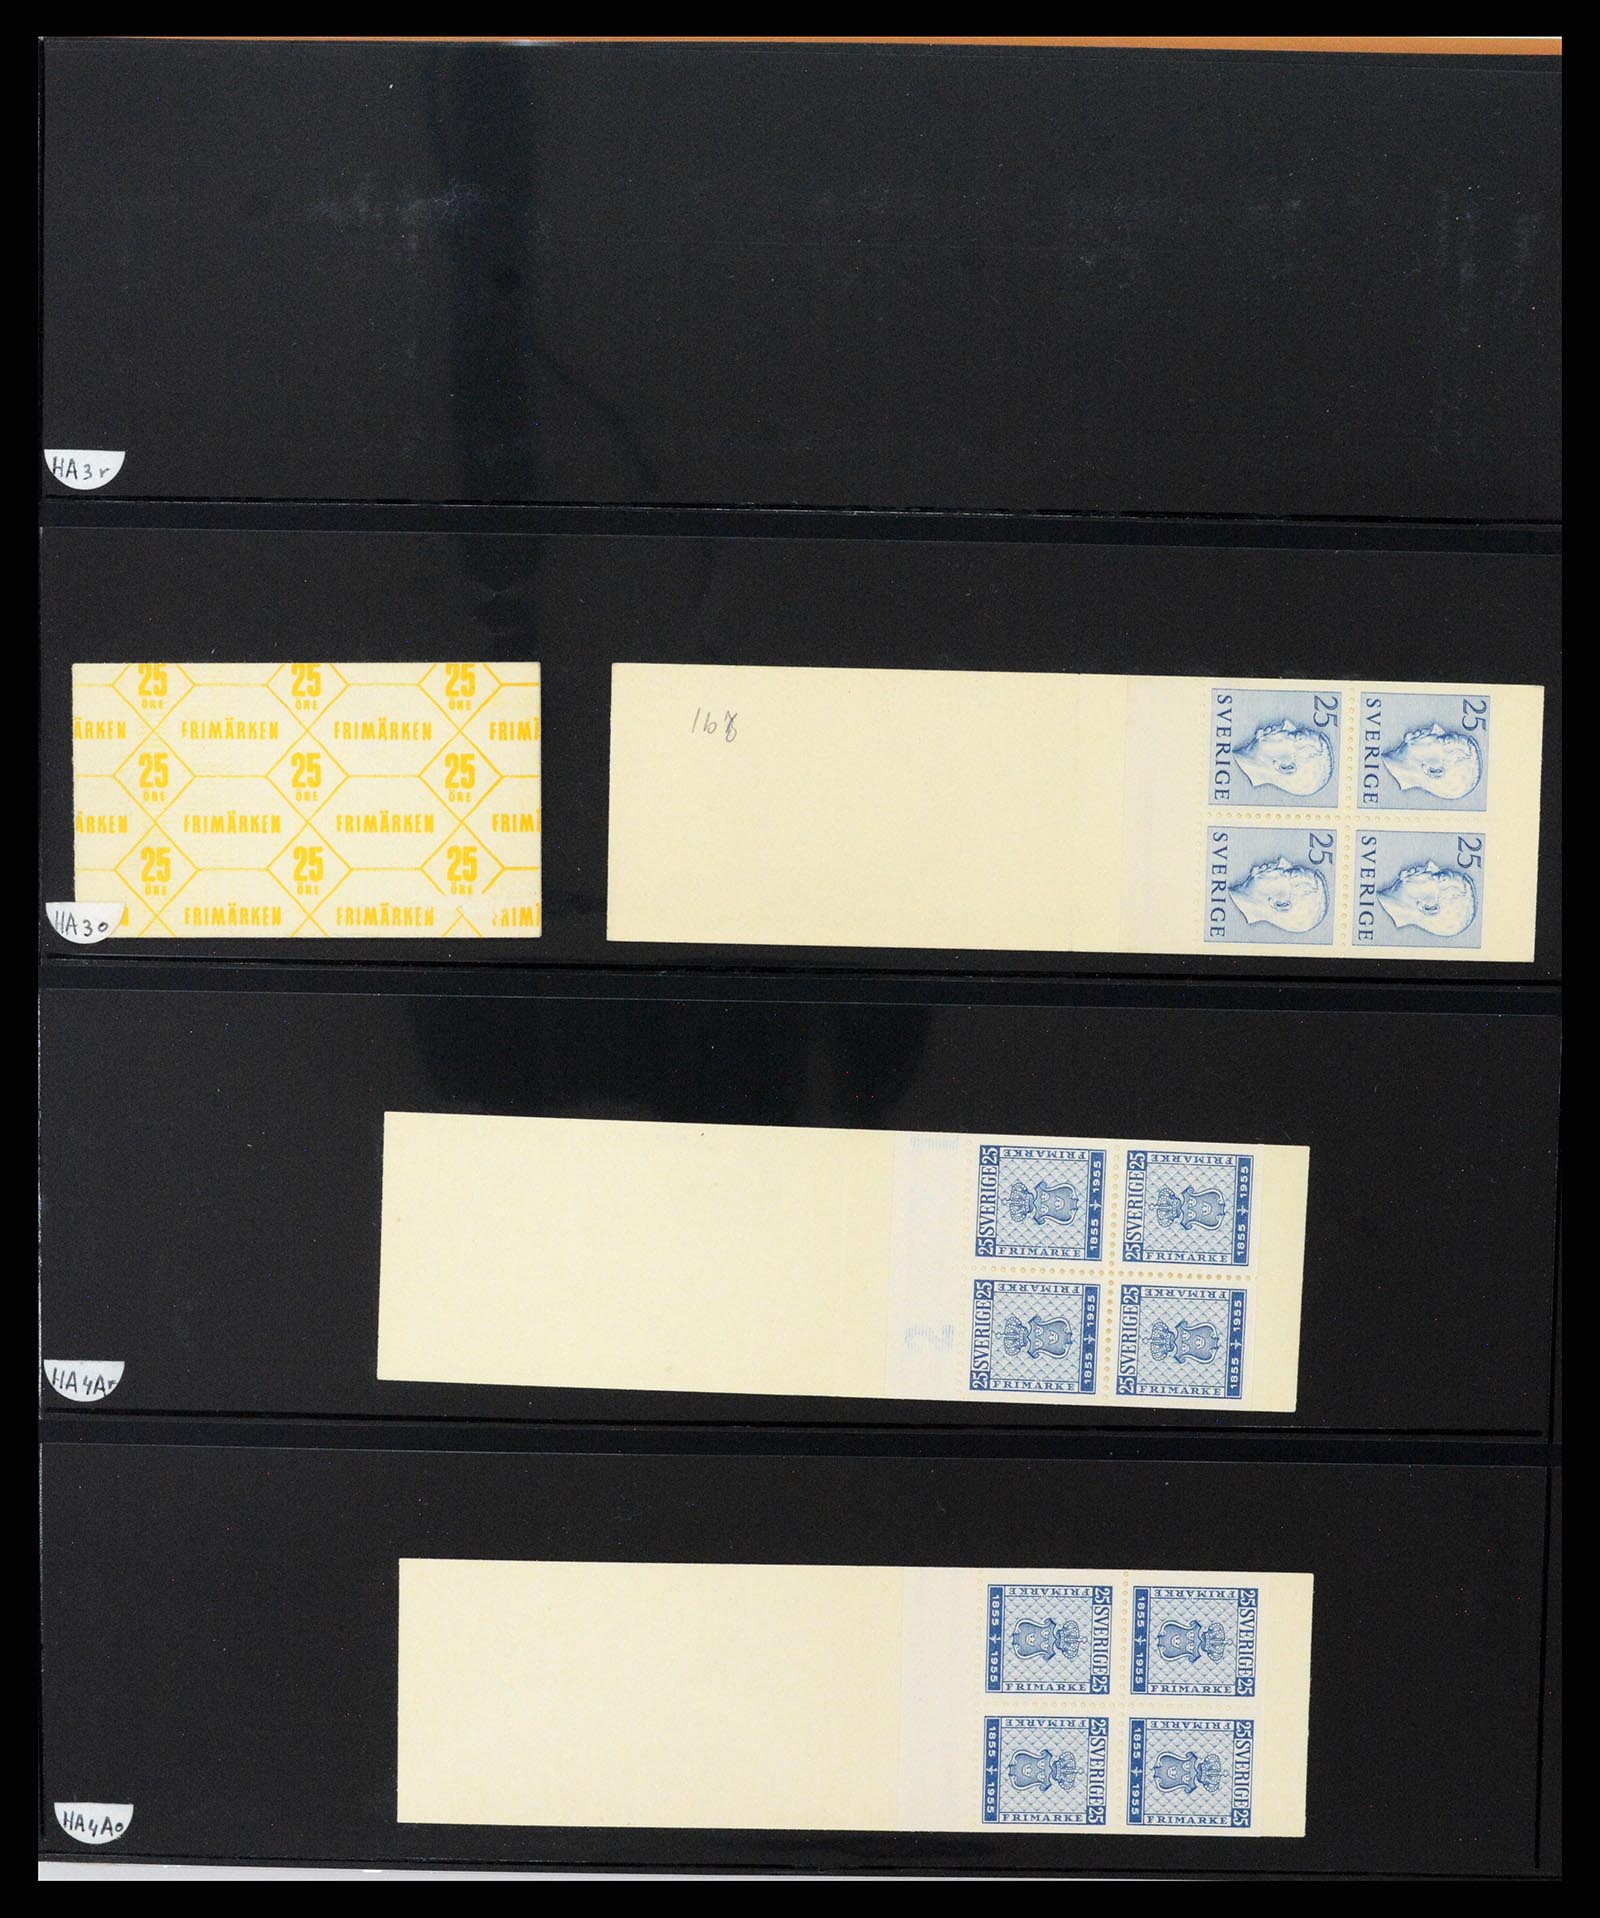 37345 056 - Stamp collection 37345 European countries souvenir sheets.